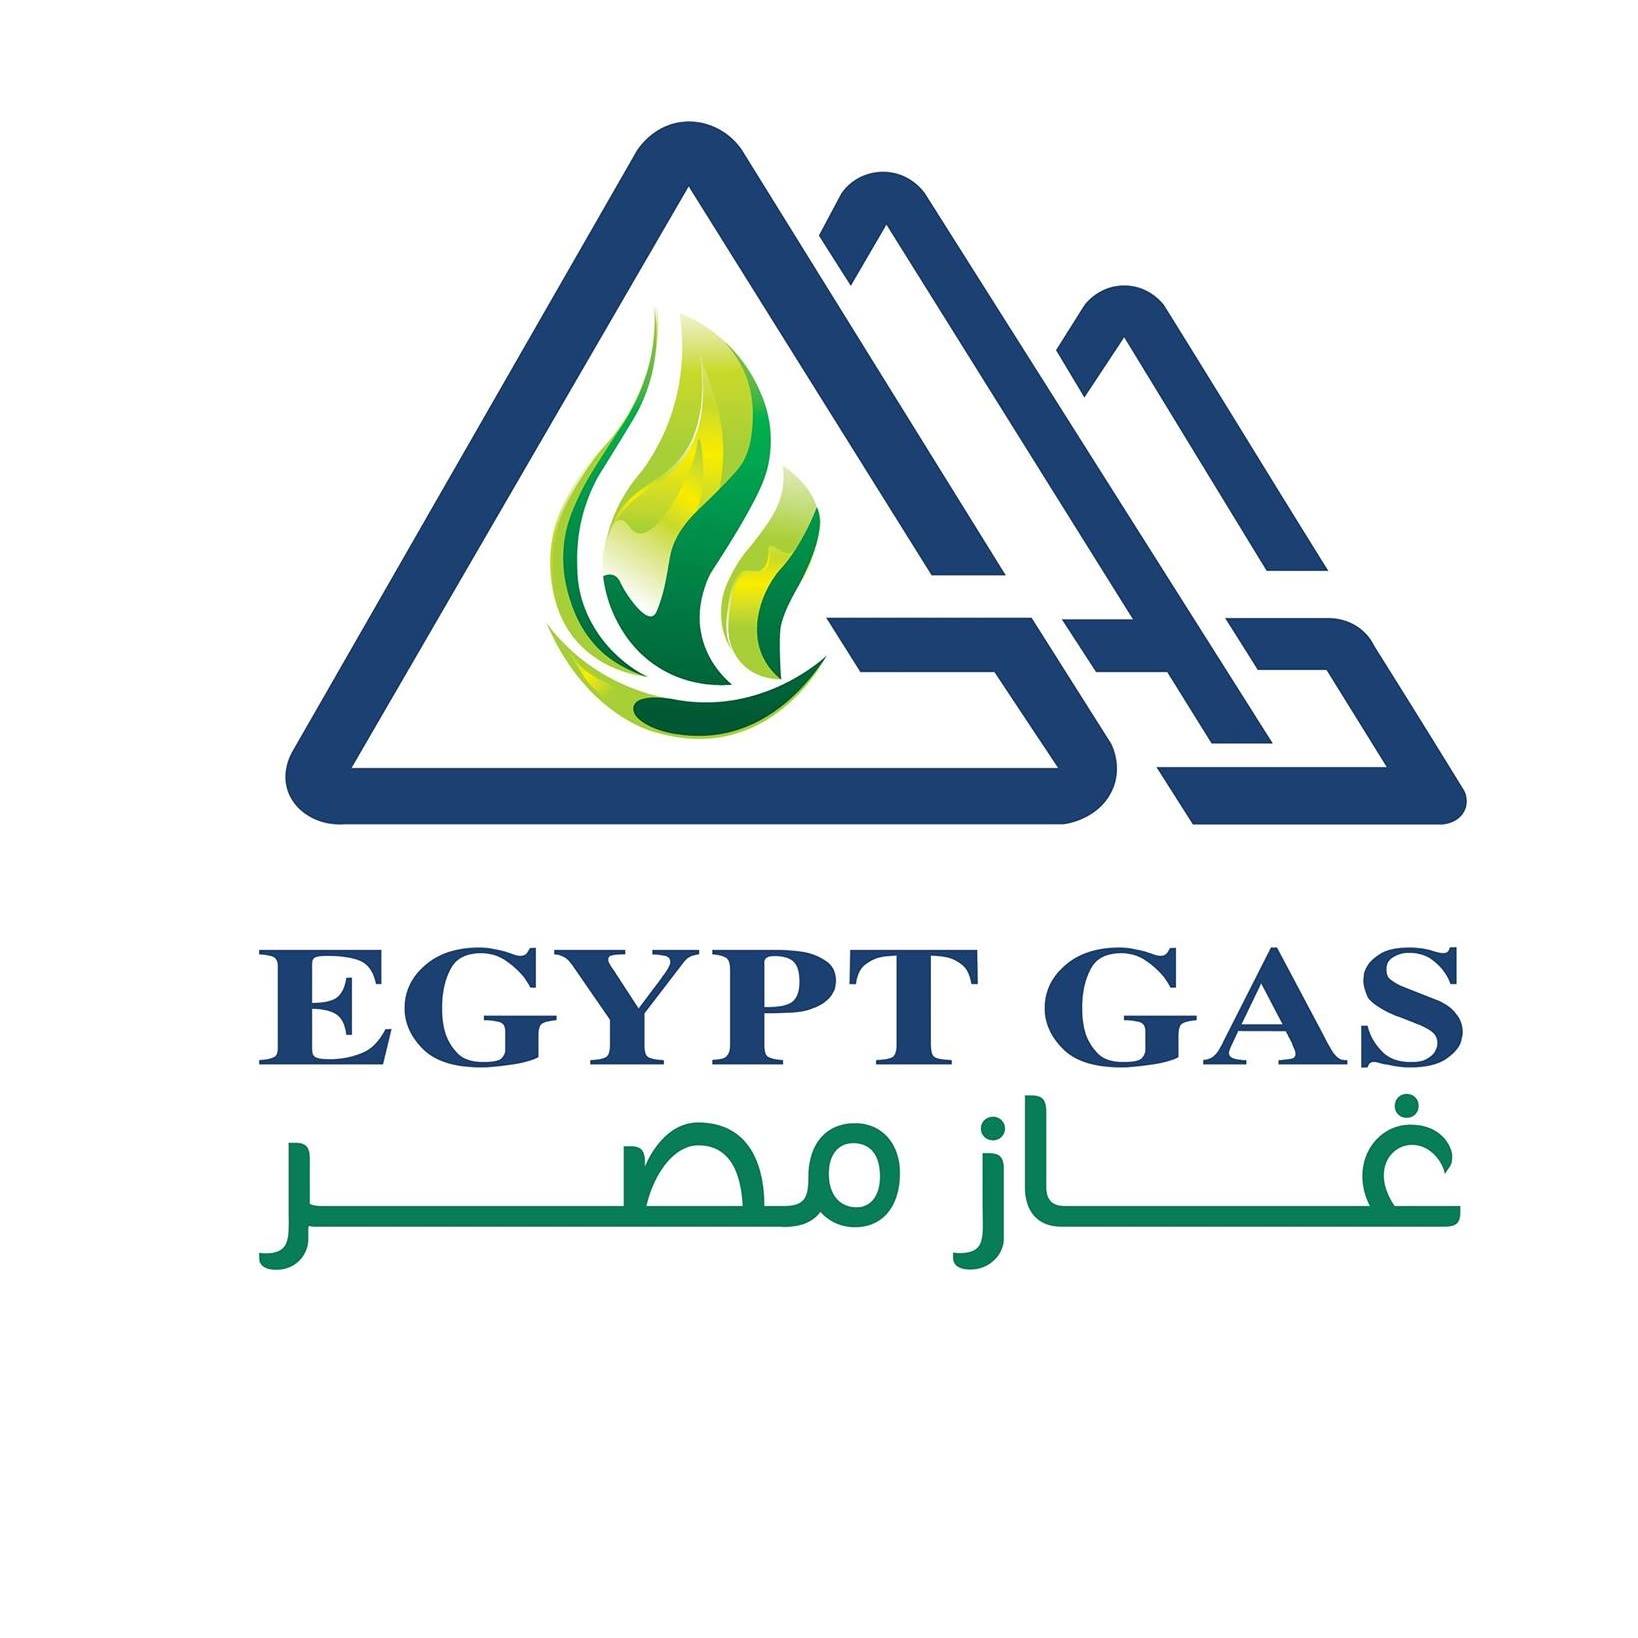 شركة الغاز الطبيعي تعلن عن وظائف خالية للمؤهلات العليا والمتوسطة والفوق متوسطة بتاريخ 31-12-2022